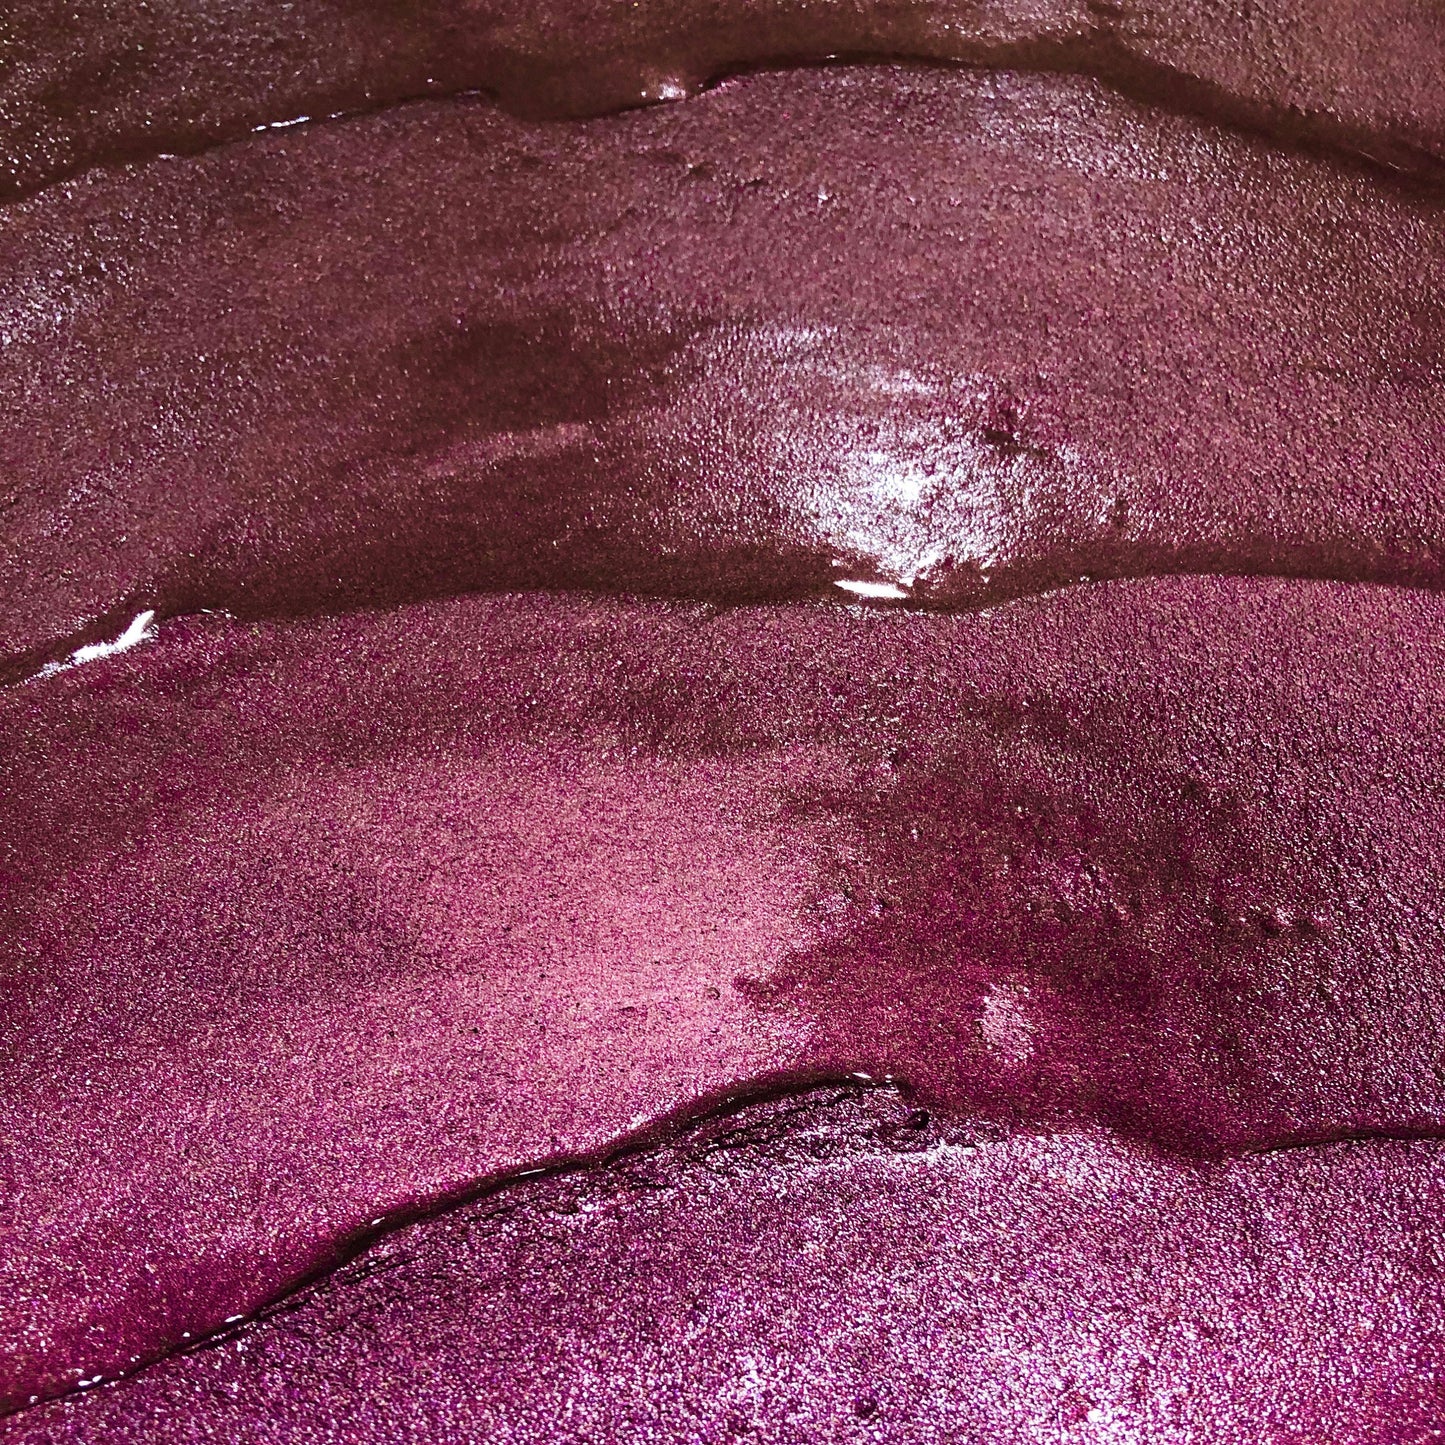 Red Bean purple watercolor paints Half pans